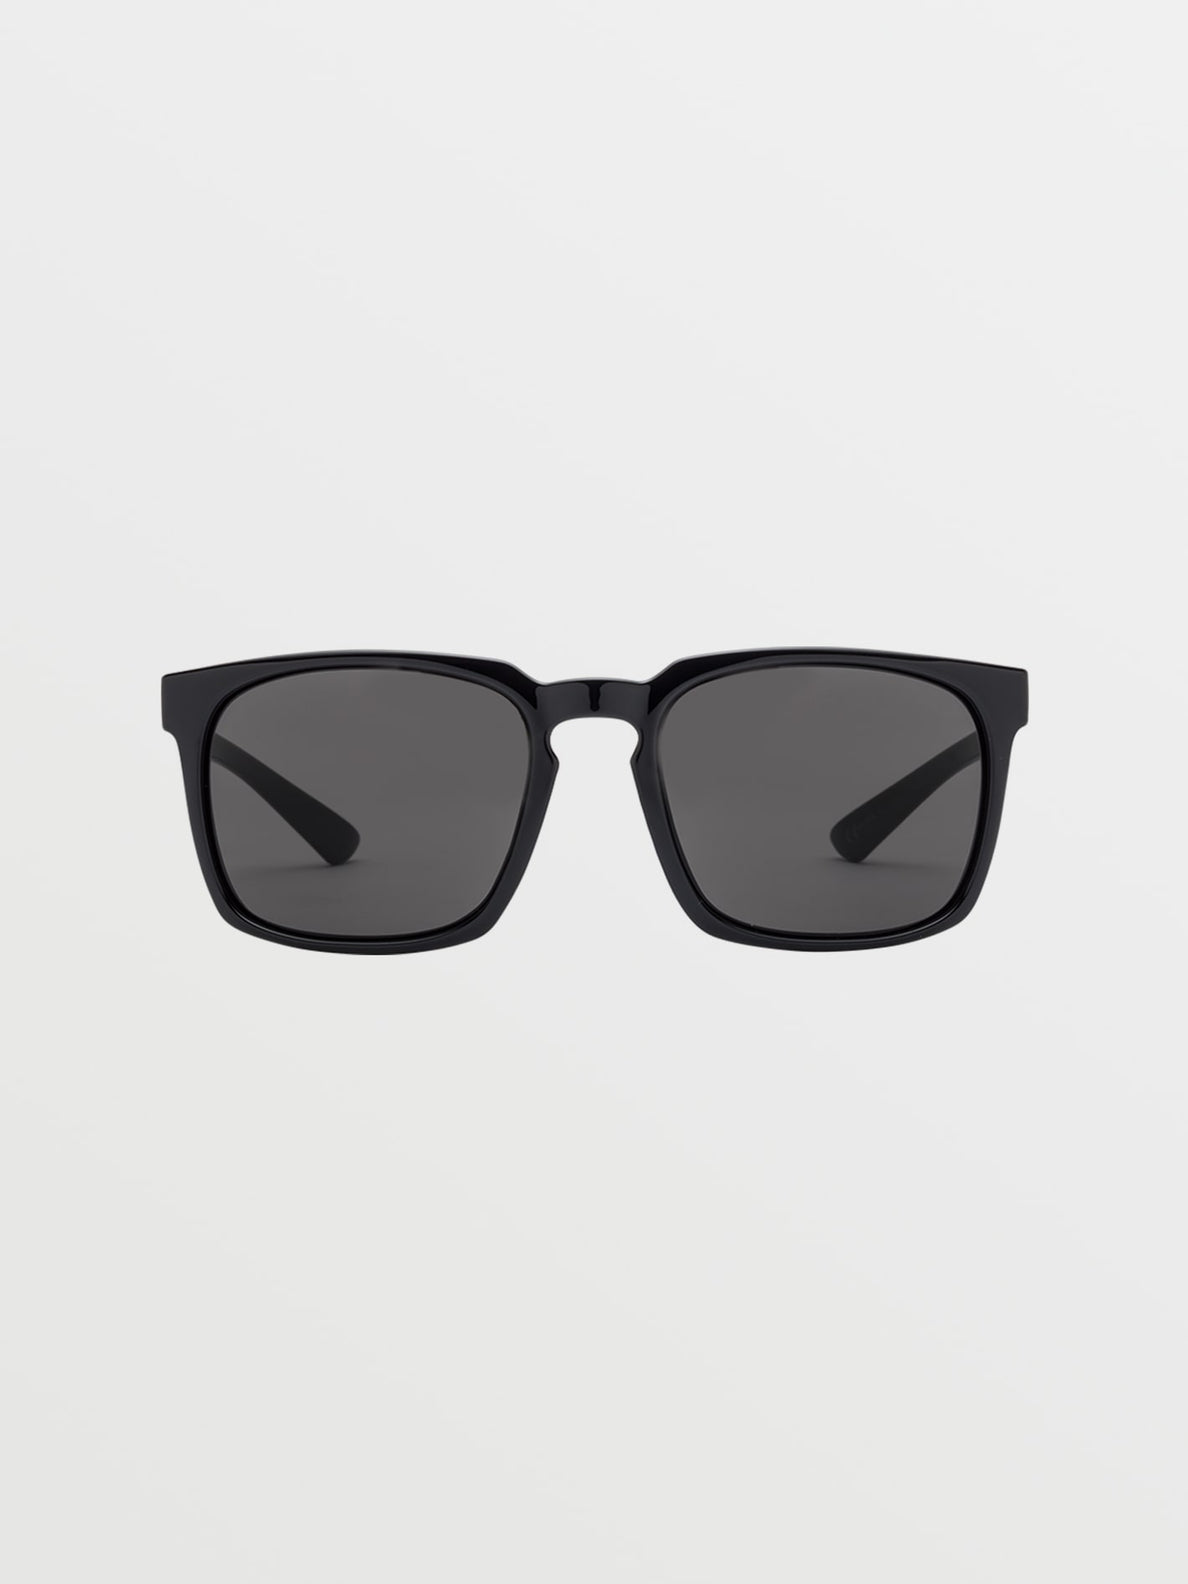 Alive Sunglasses - Gloss Black / Grey